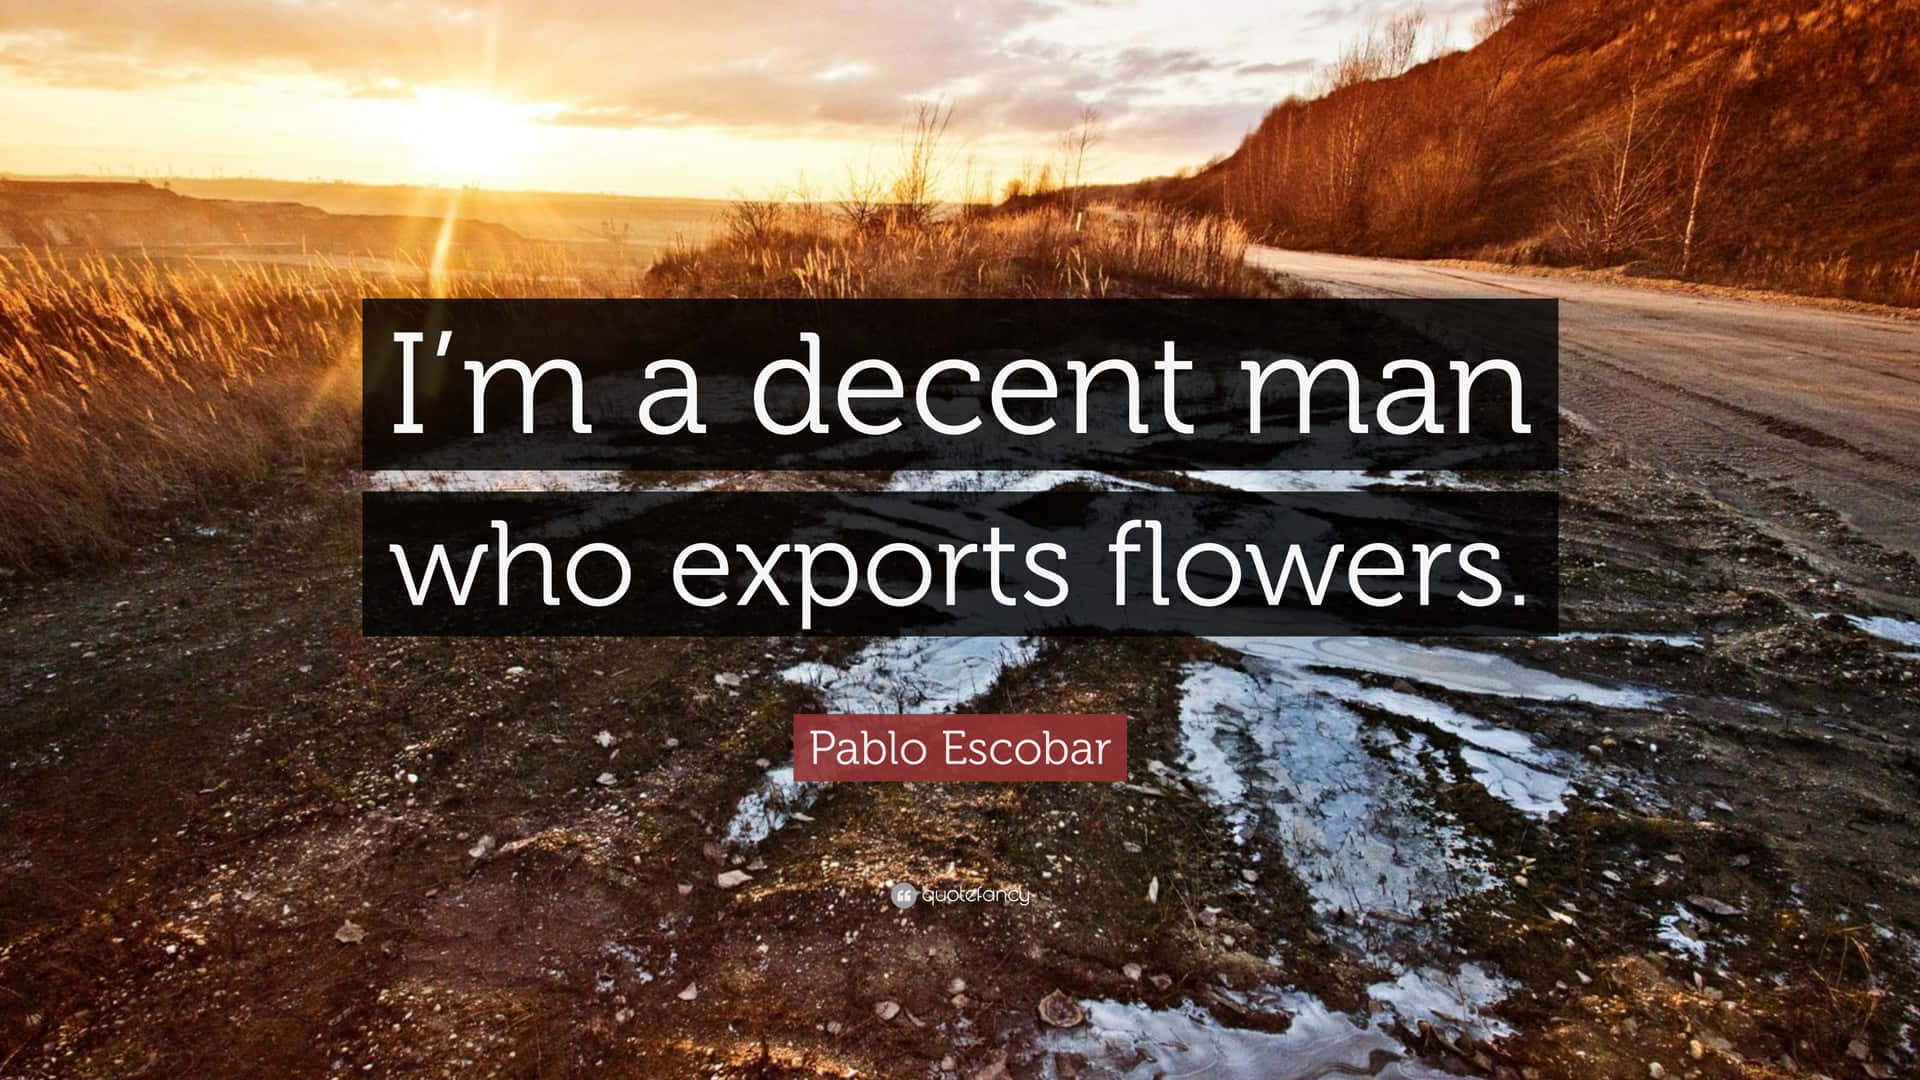 Eusou Um Homem De Descendência Que Exporta Flores.